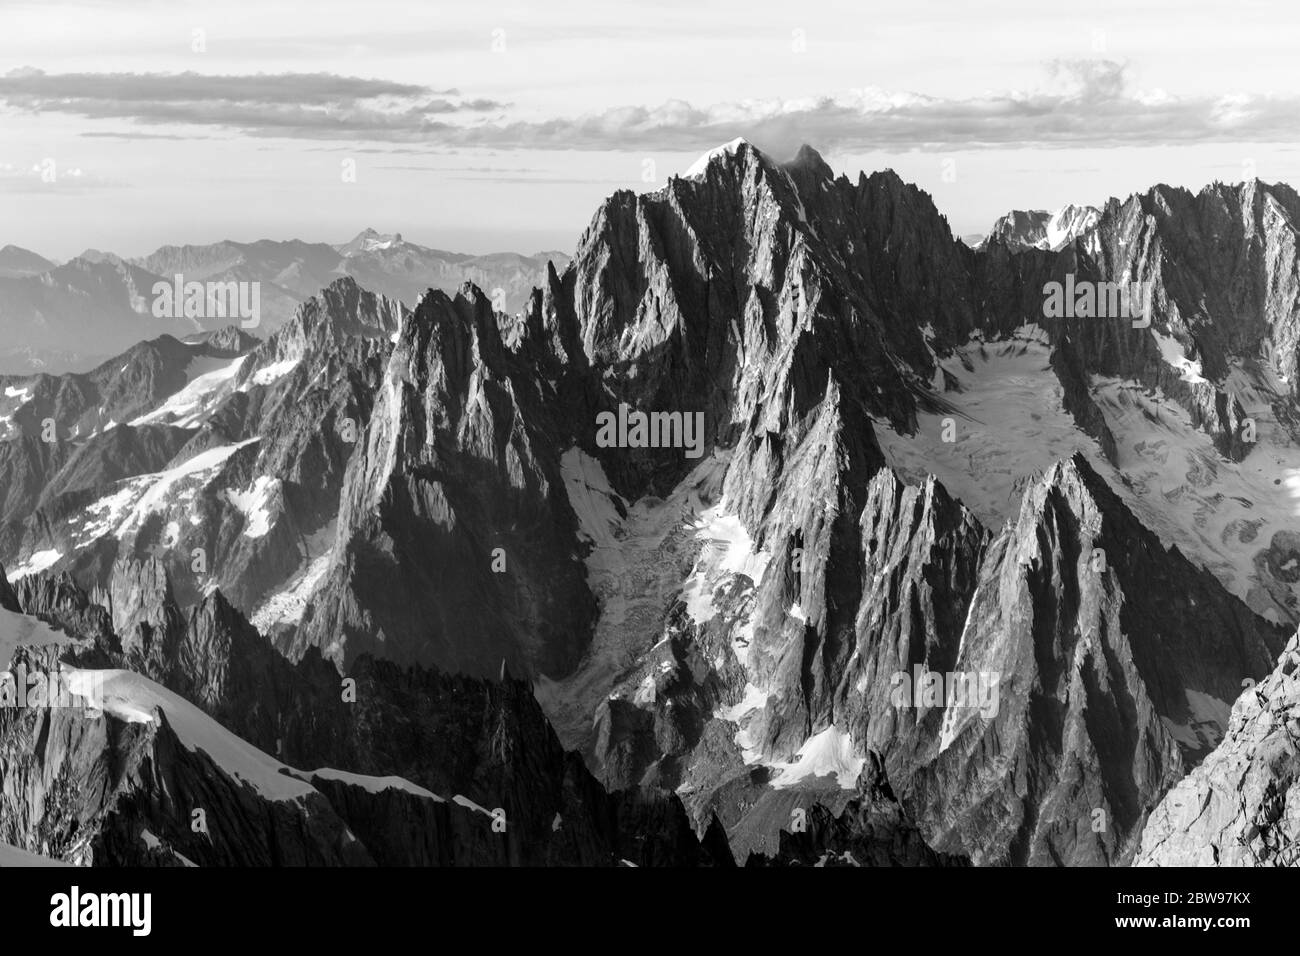 Alpengipfel, Felsen und Steine des Mont Blanc Massivs Blick vom Mont Maudit in den französischen Alpen, Chamonix-Mont-Blanc, Frankreich. Landschaftlich schöne Bilder von Wandern Konz Stockfoto